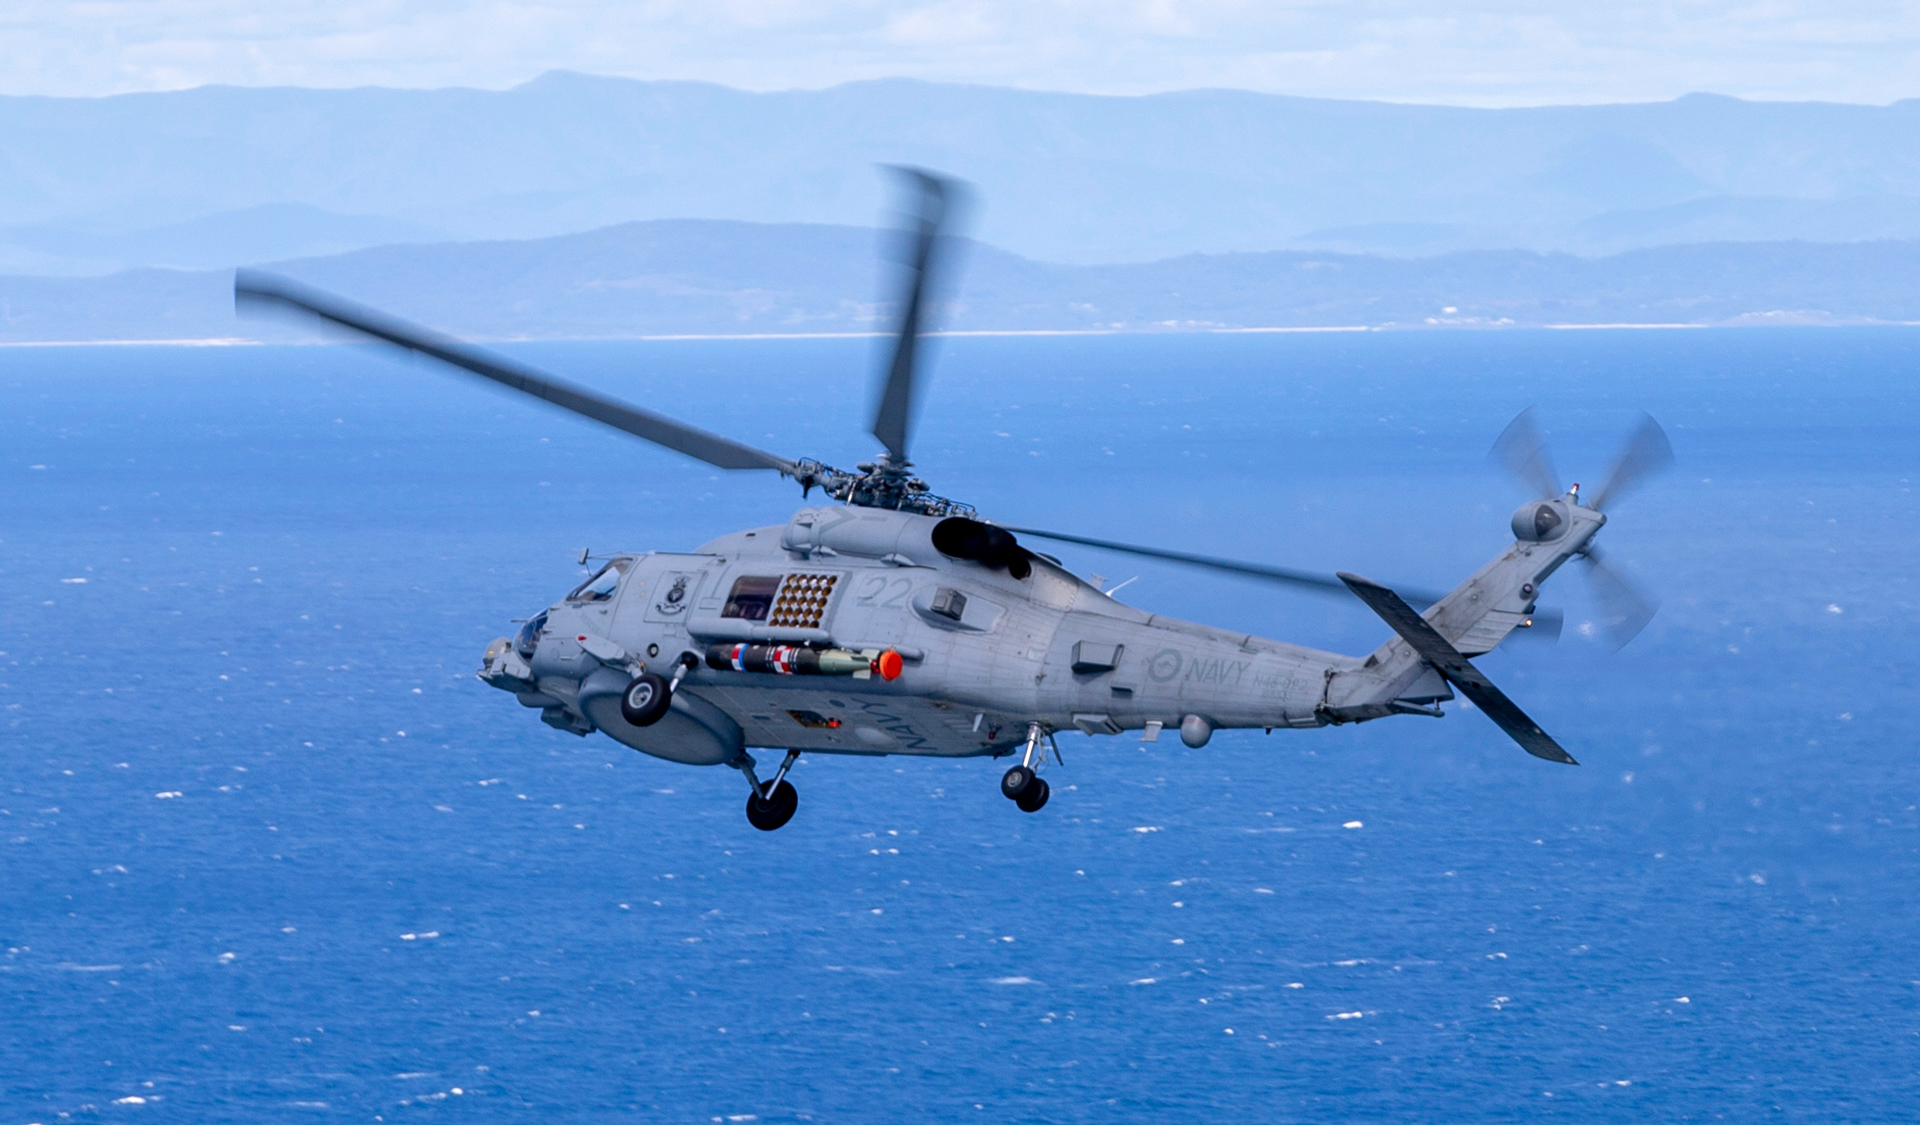 澳大利亚皇家海军已经向美国海军MH-60R直升机下了第二份订单。图片由RAN提供。